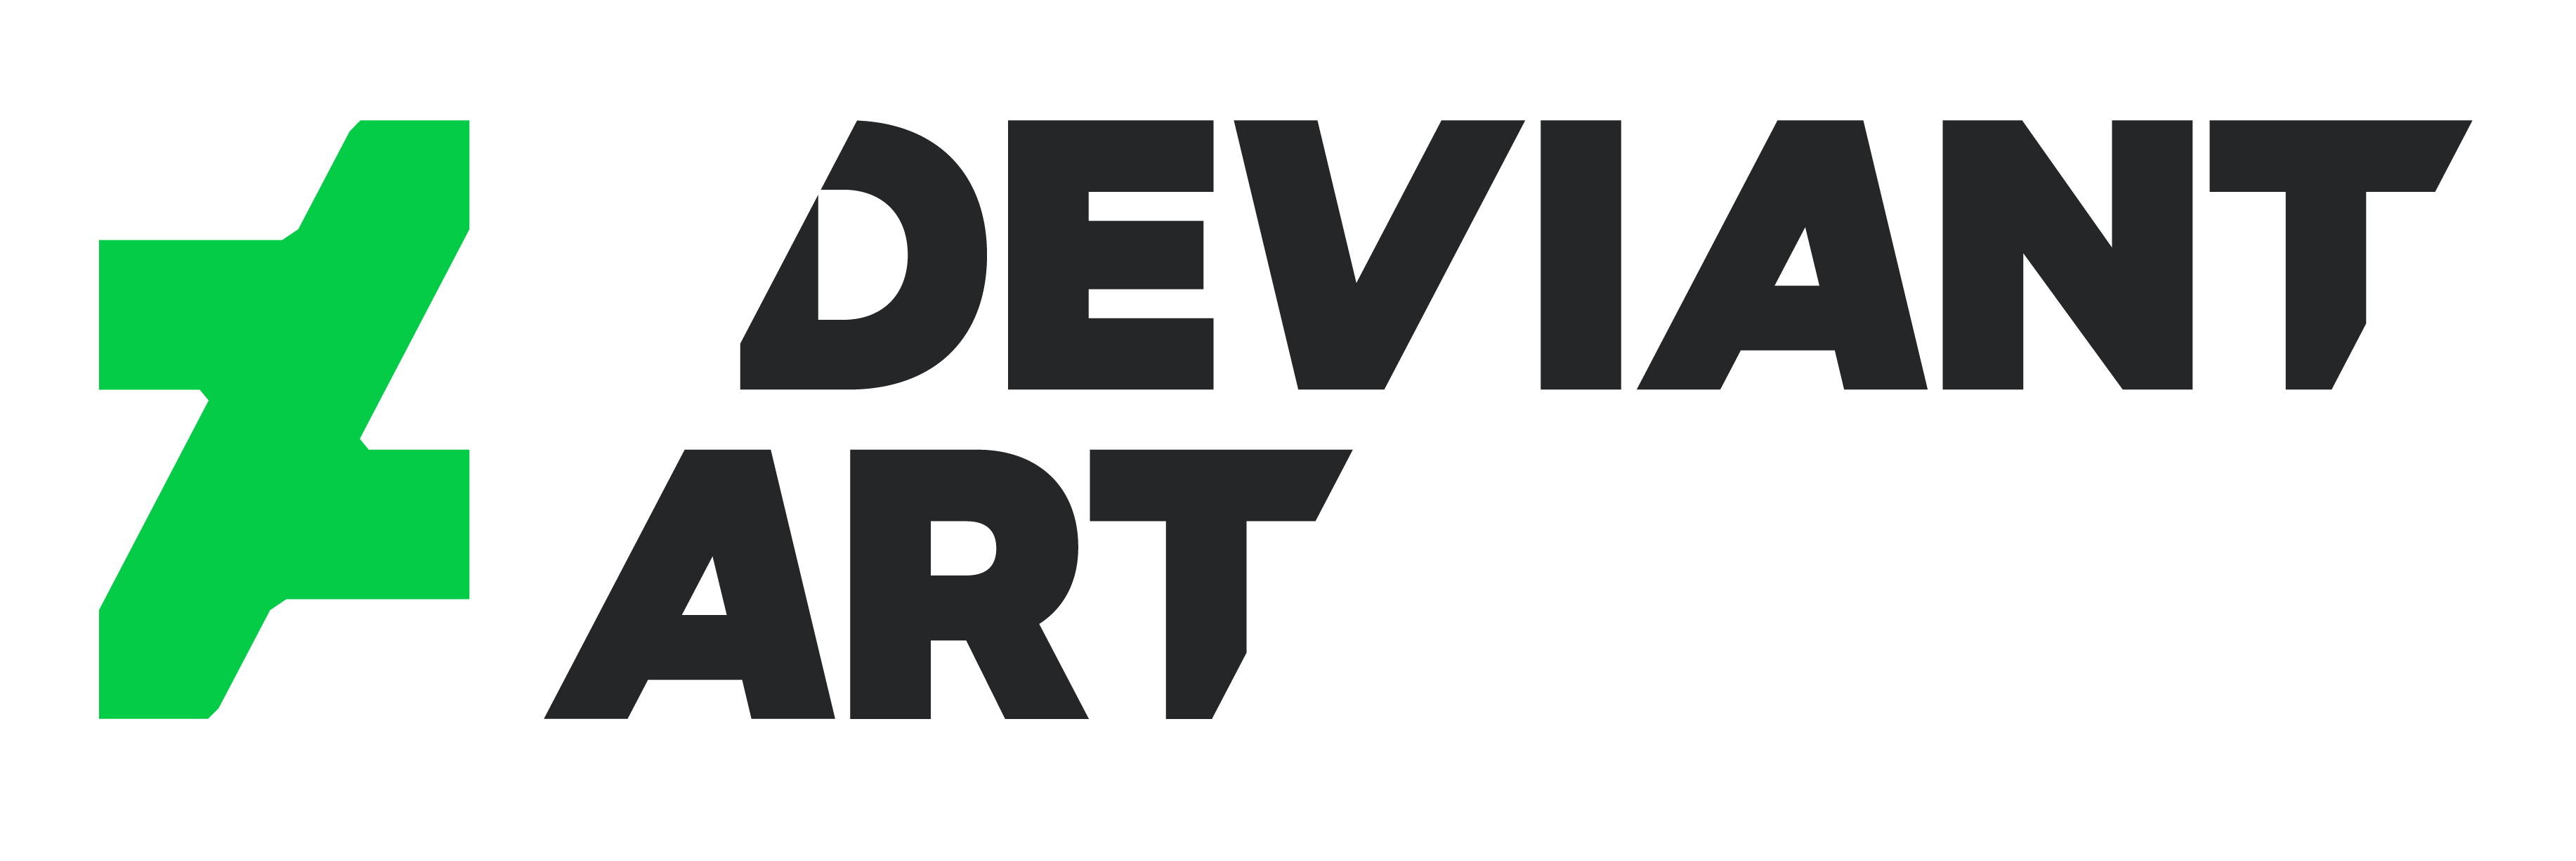 Deviantart Logo PNG Transparent Images | PNG All